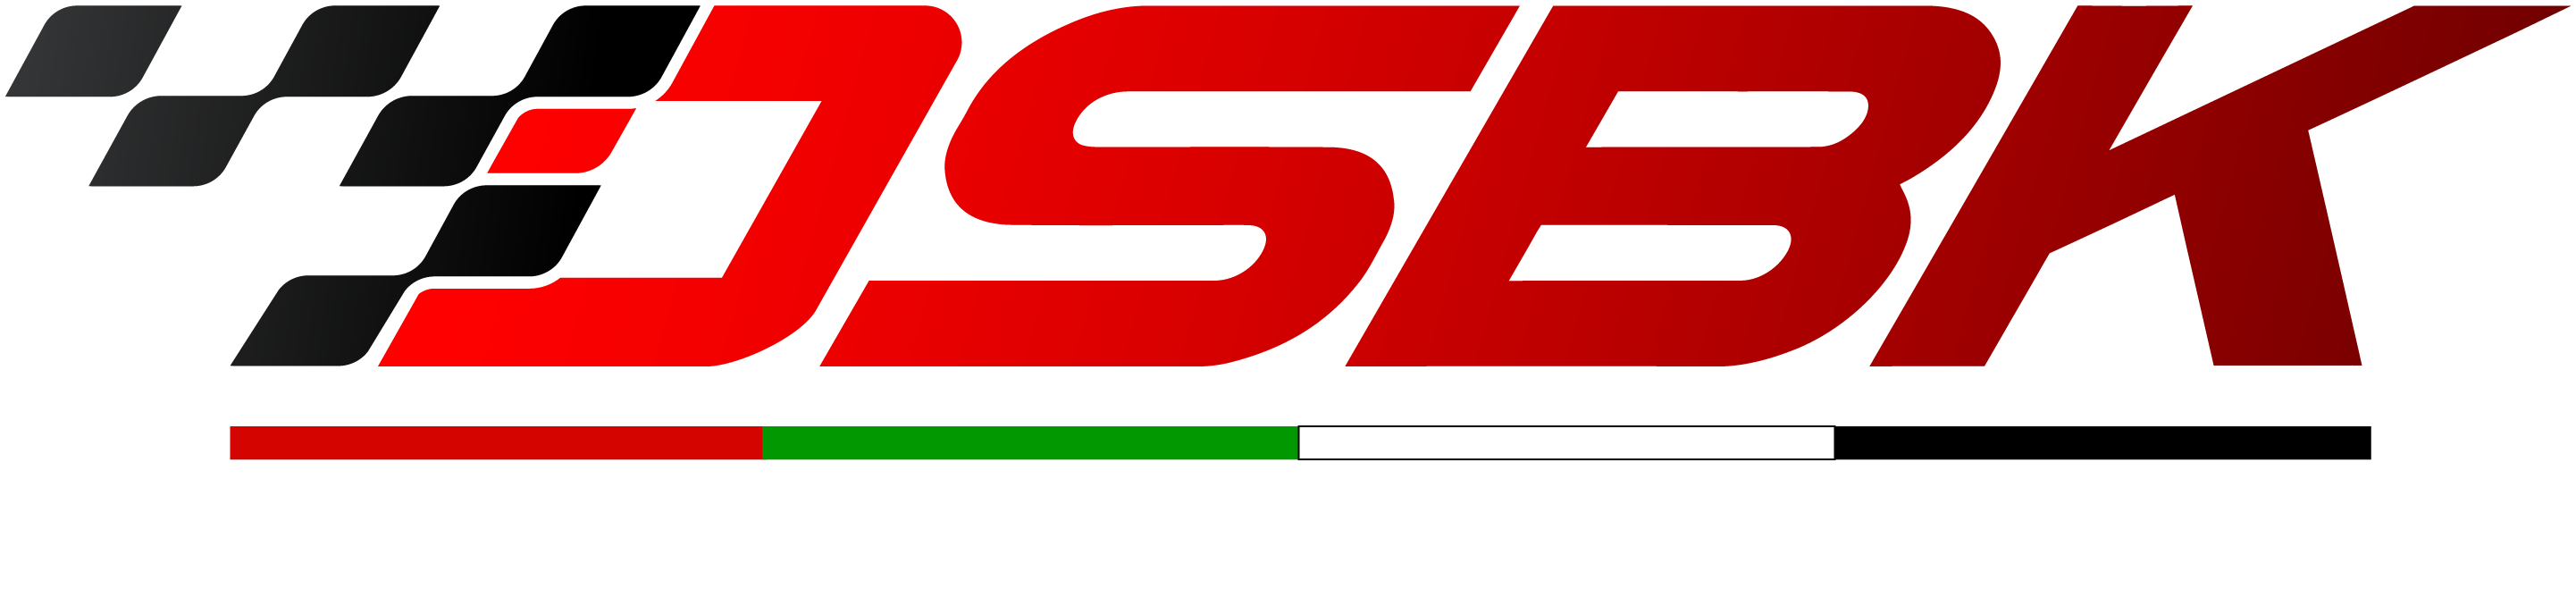 Track Participant – DSBK